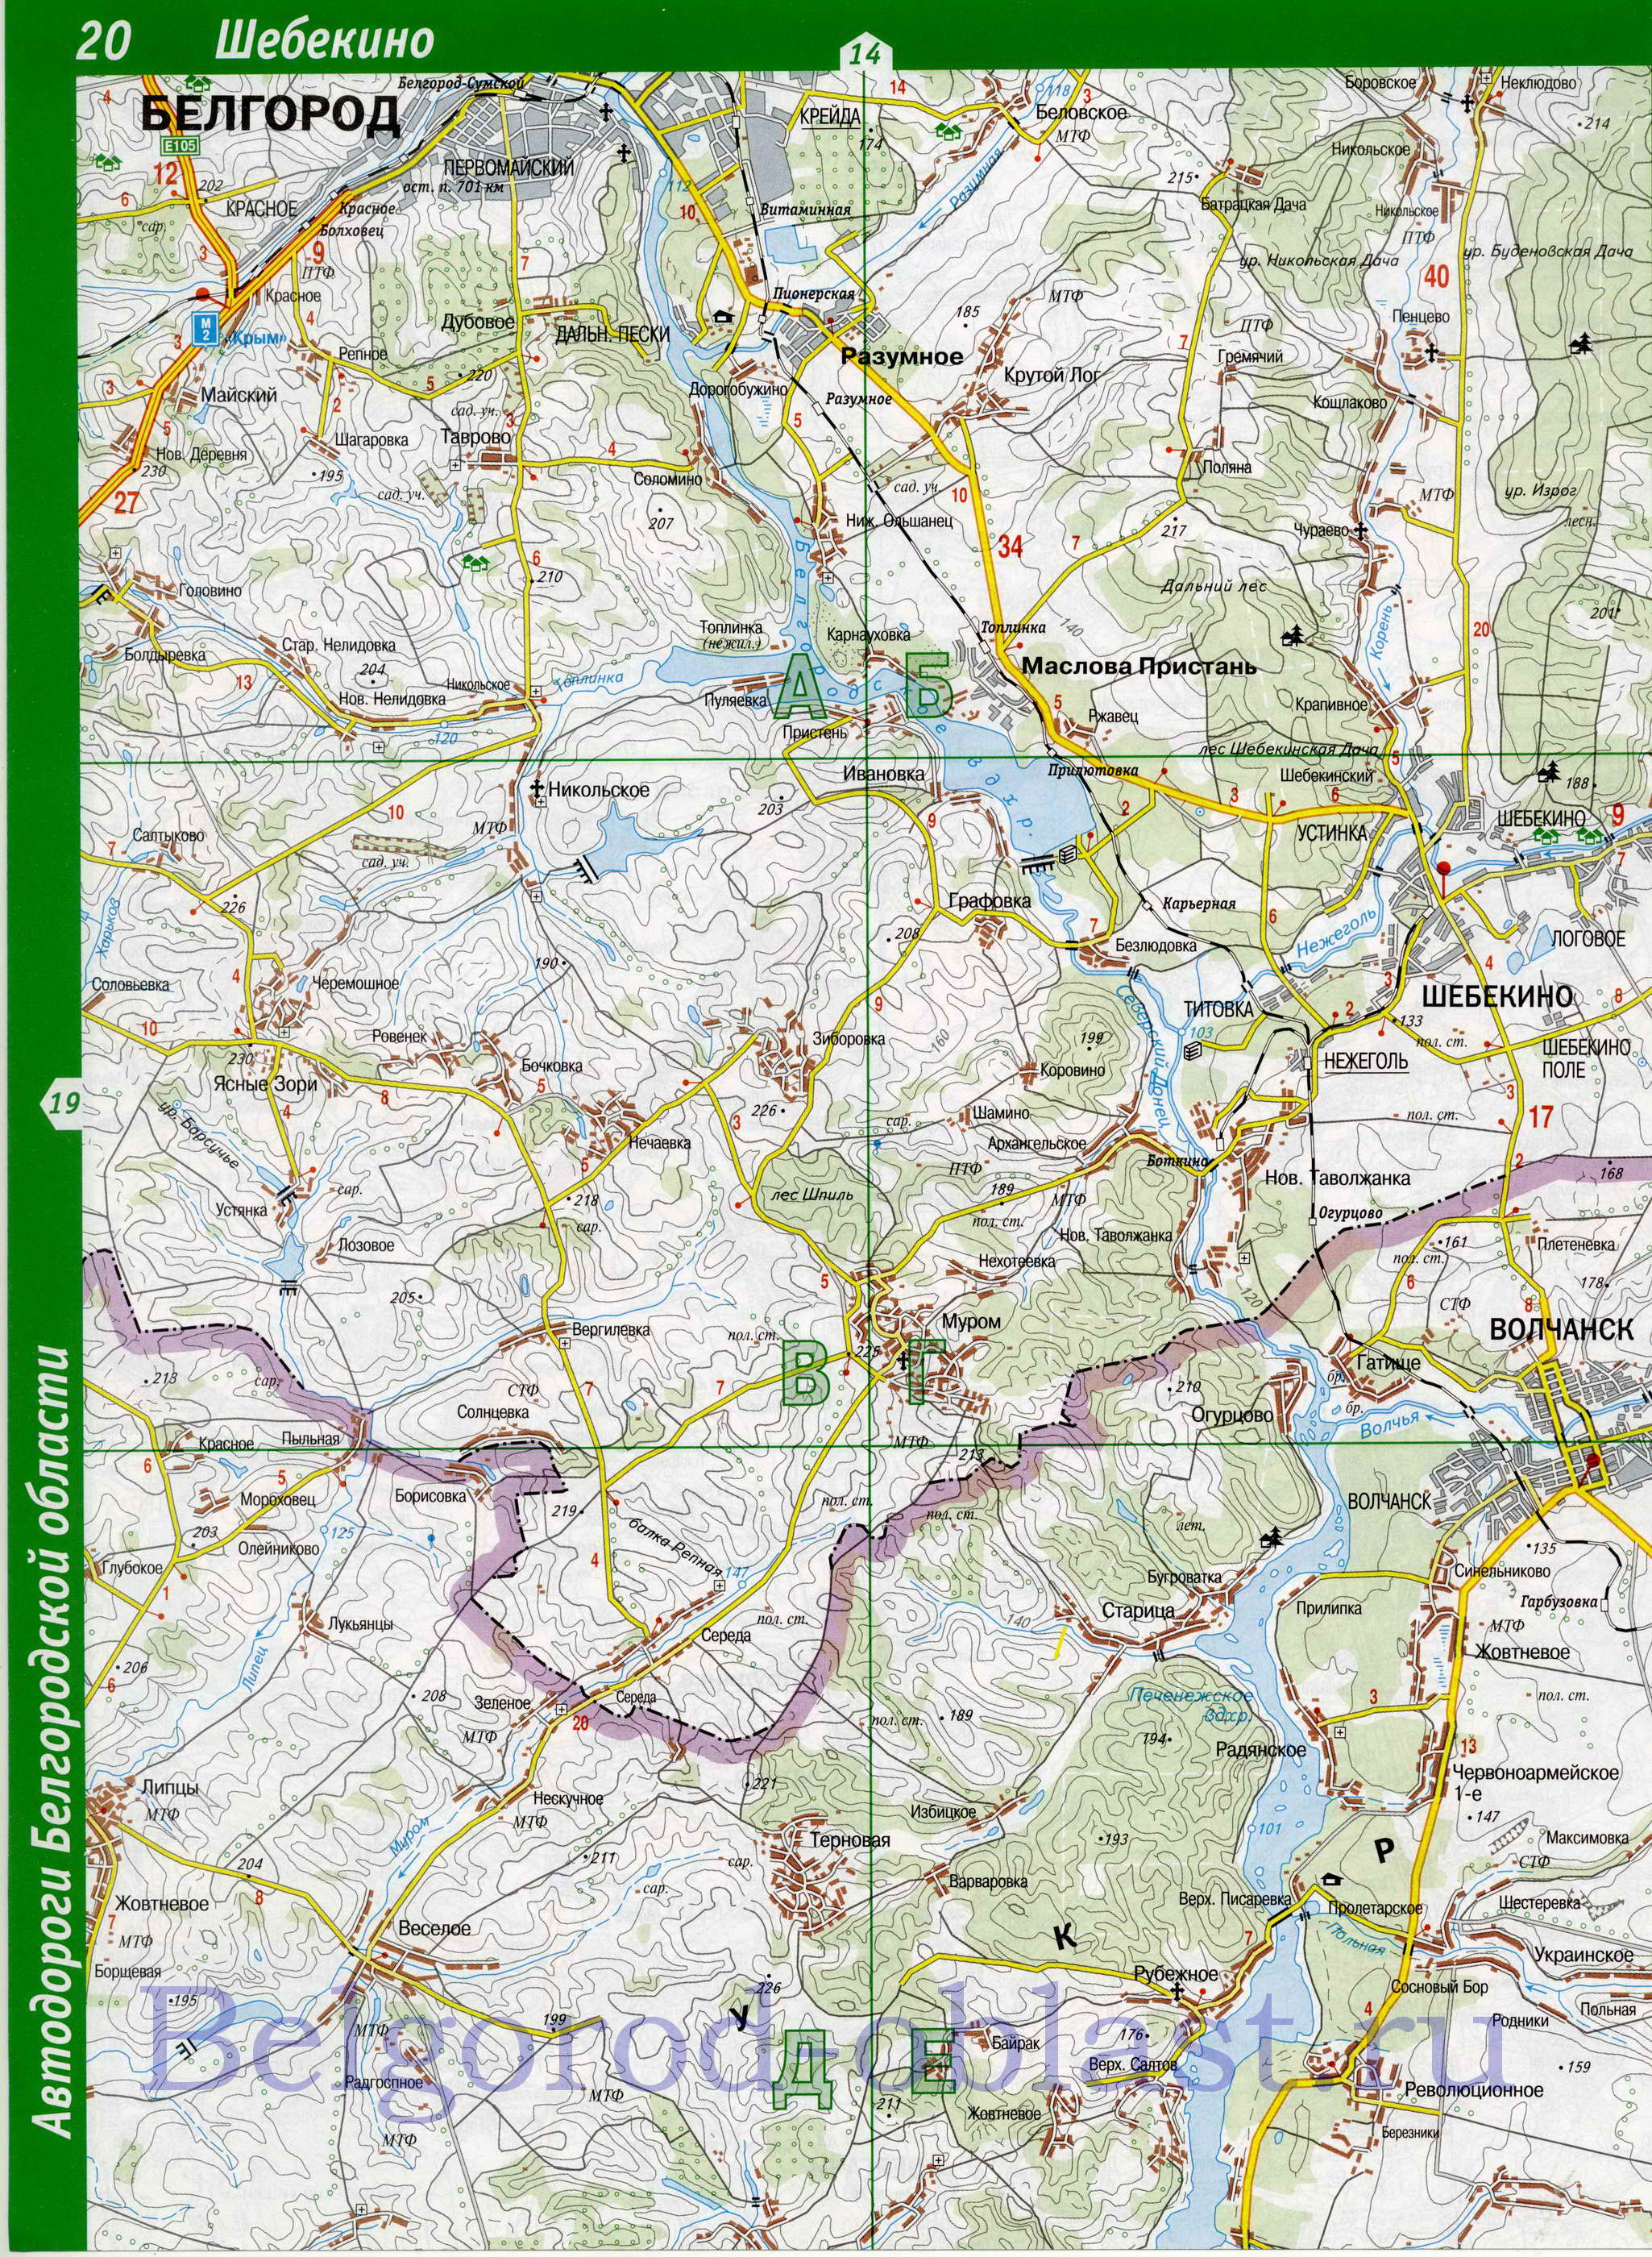 Карта Белгородской области. Белгородская область - подробная топографическая карта 1см:2км, B2 - 